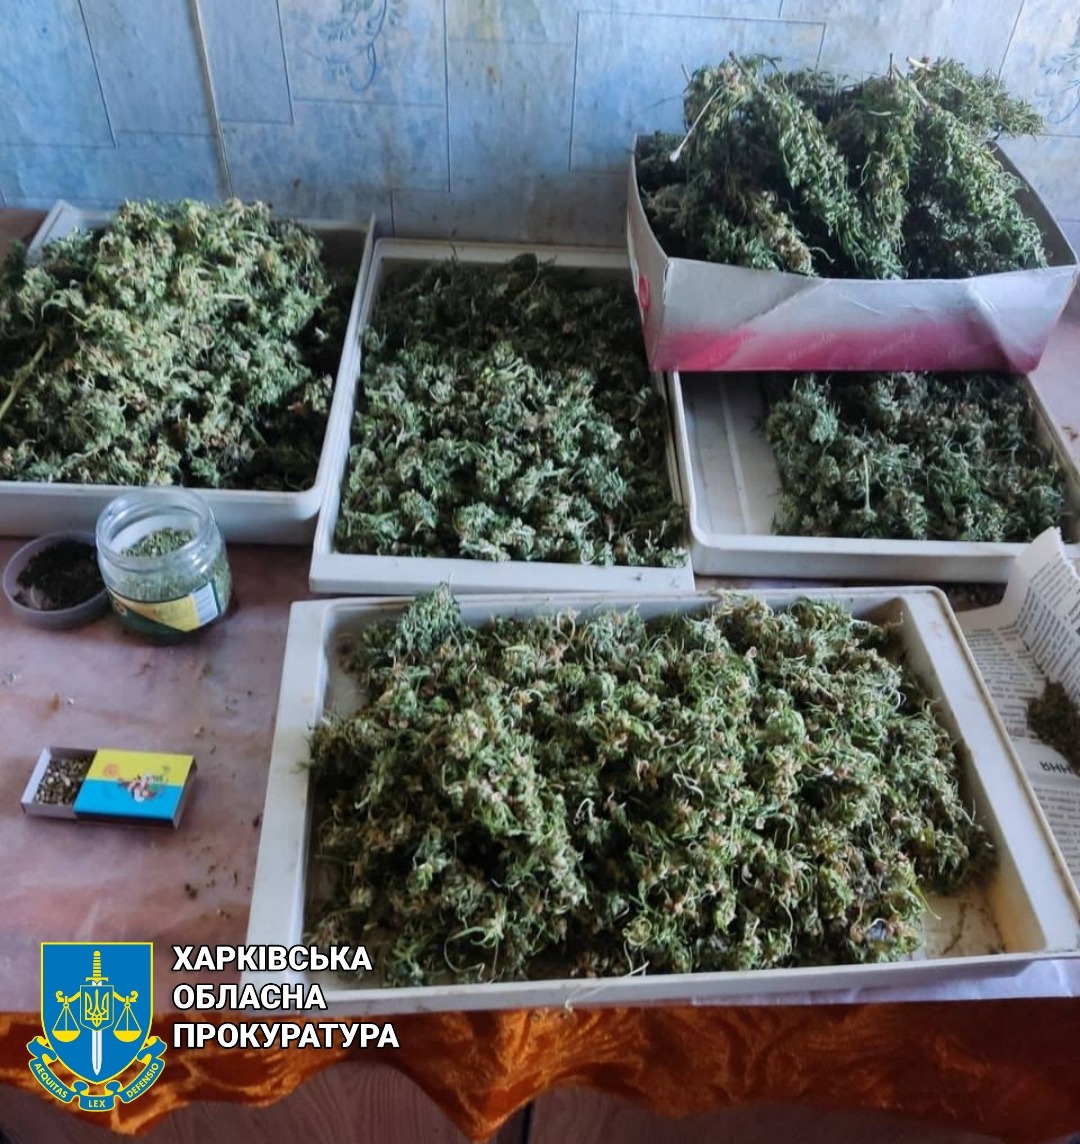 «Семейный бизнес»: на Харьковщине мужчина, мать и сын продавали наркотики